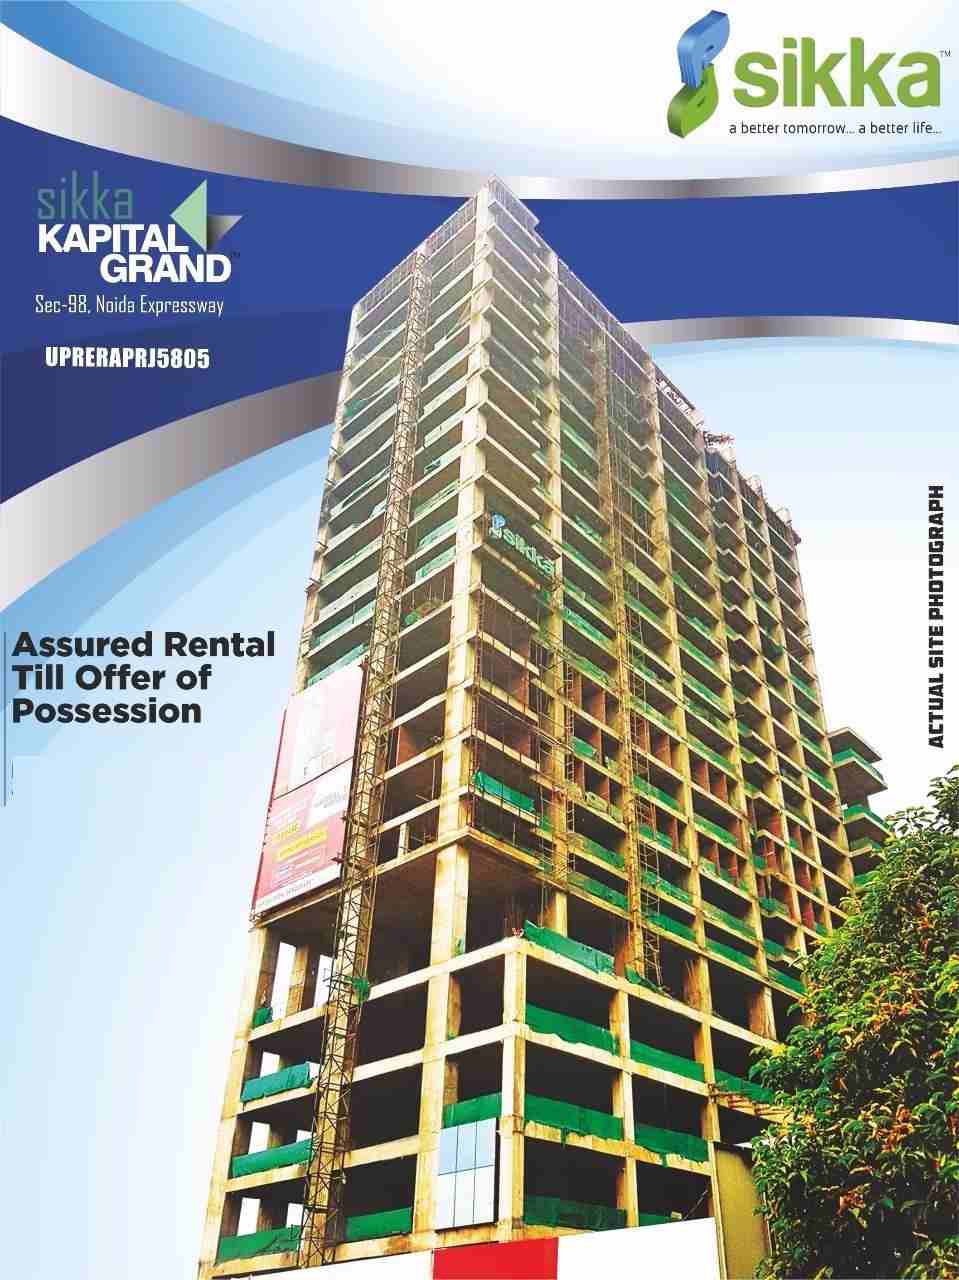 Assured rental till offer of possession at Sikka Kapital Grand in Noida Update